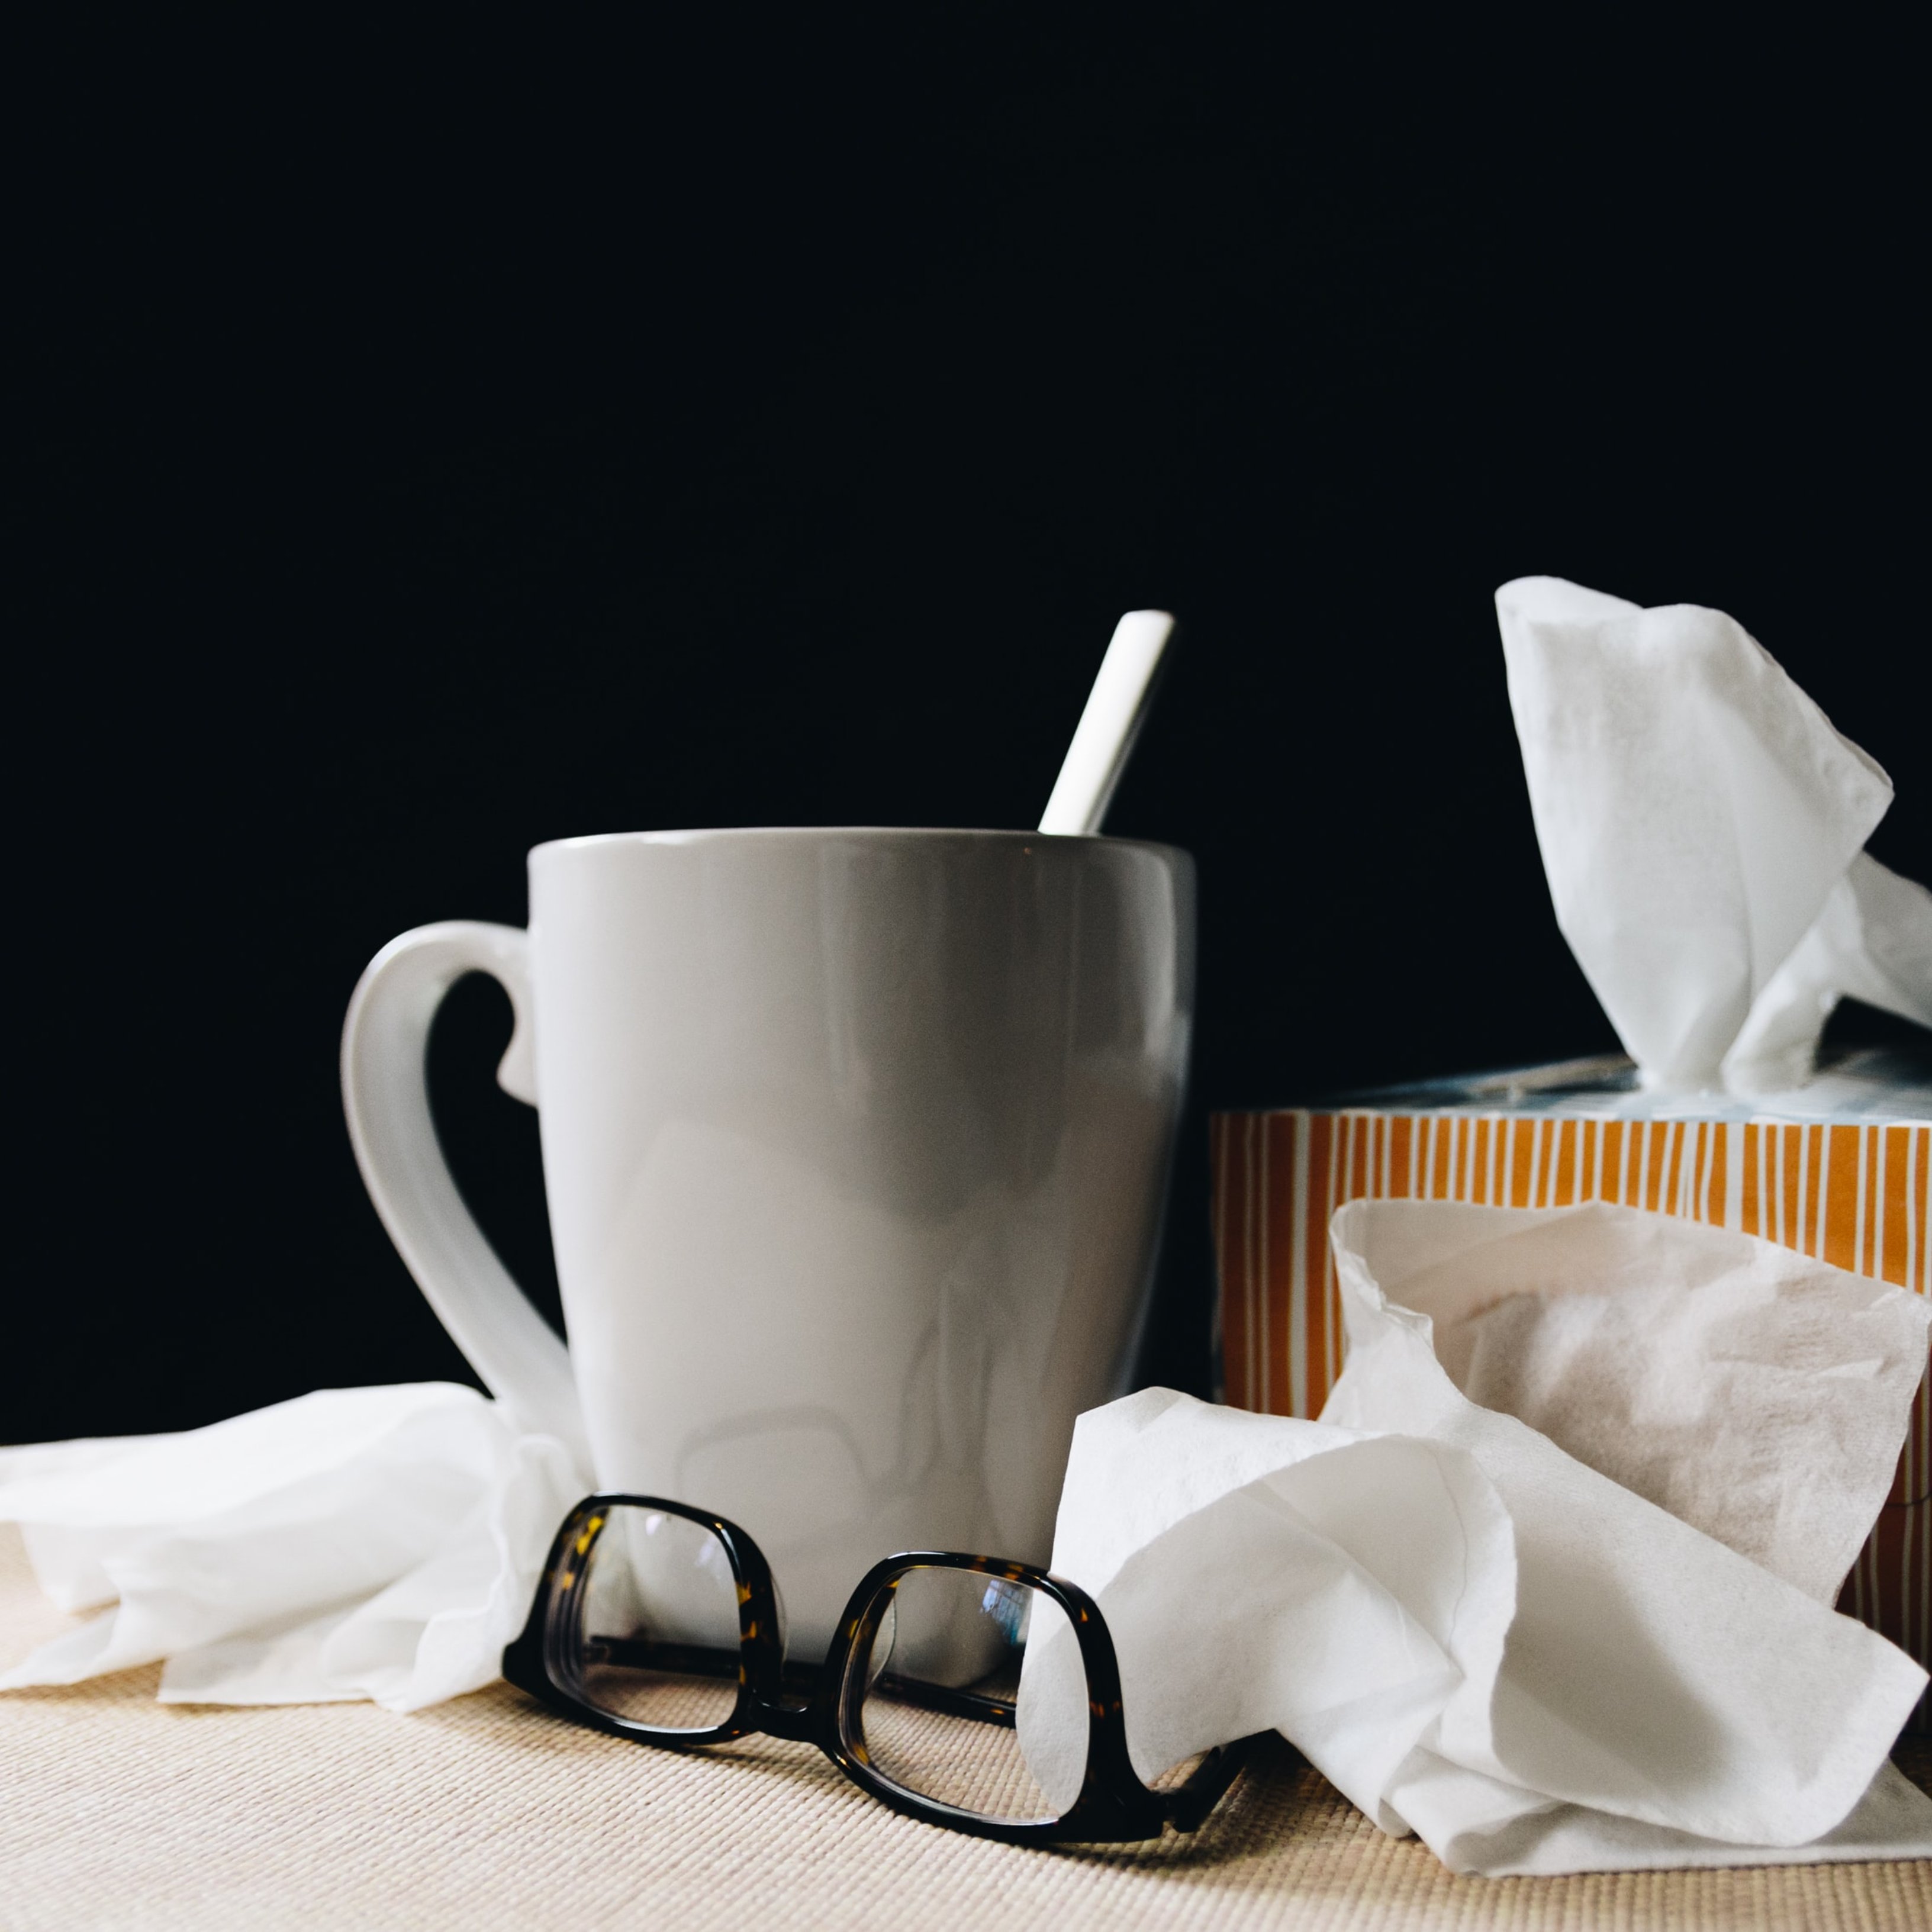 Grip, refredat o Covid-19? La baixada de les temperatures dispara l'alarma